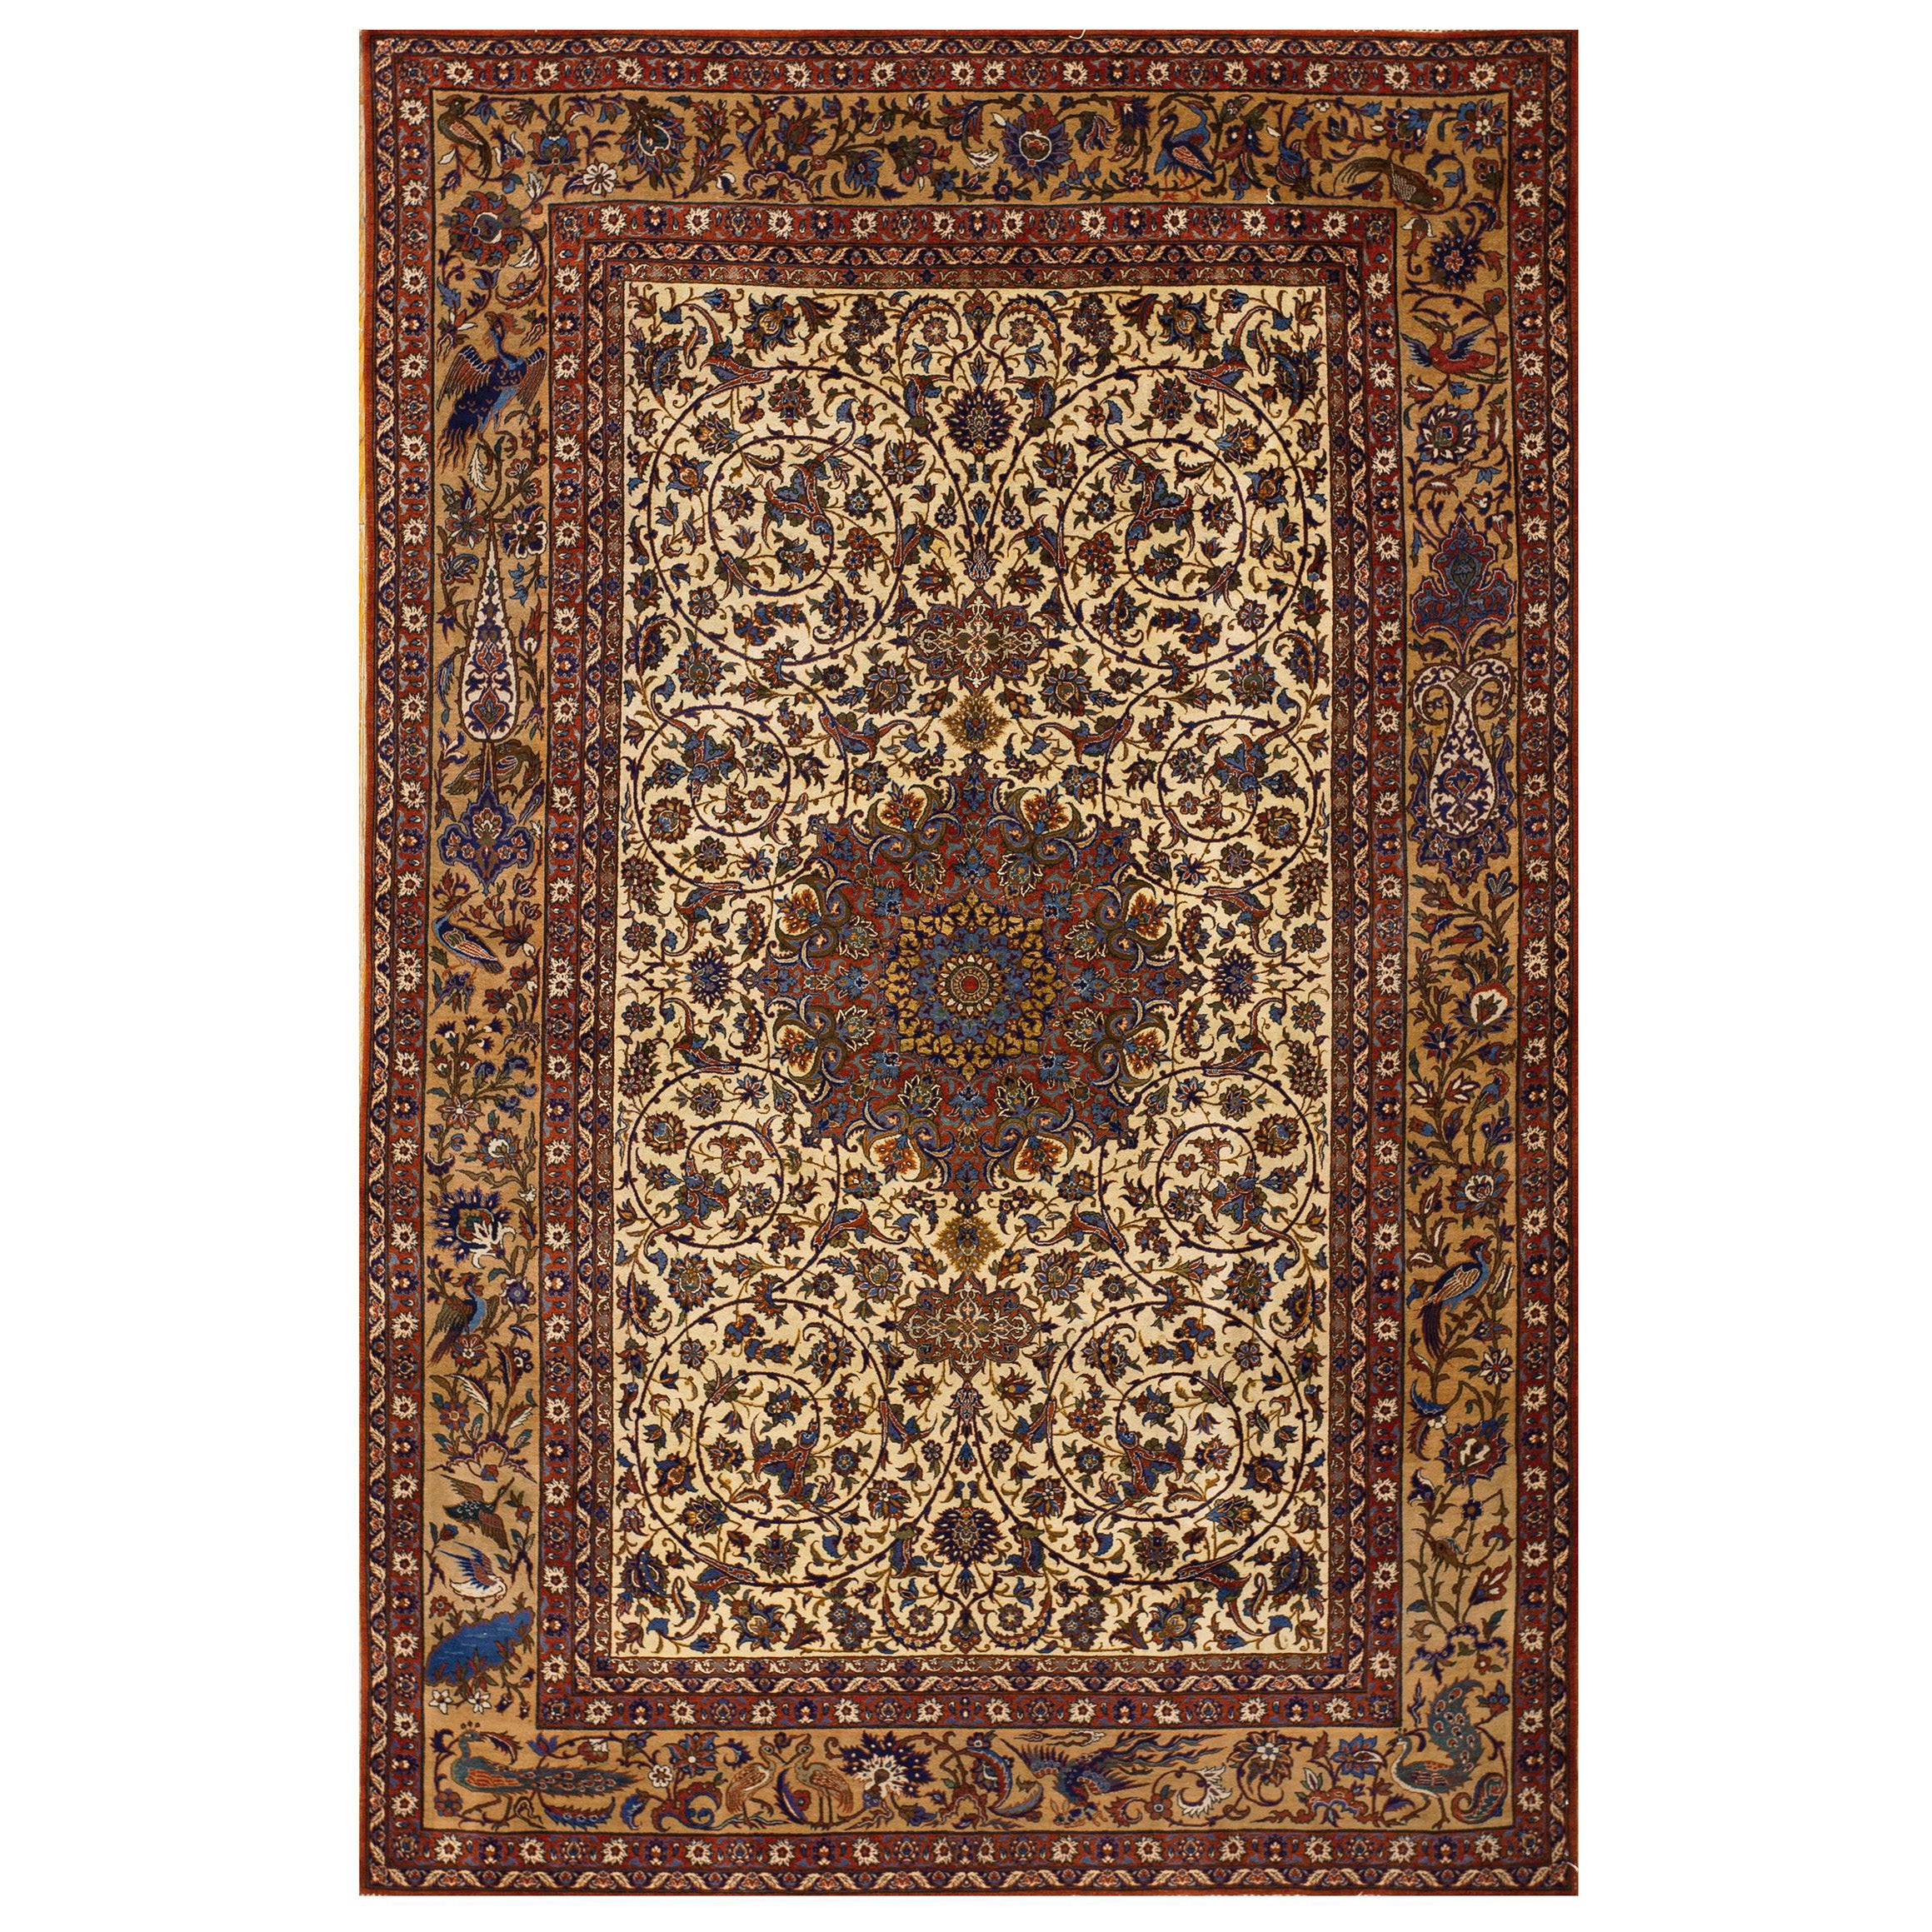 Early 20th Century Persian Isfahan ( 5' x 7' 10'' - 152 x 238 )